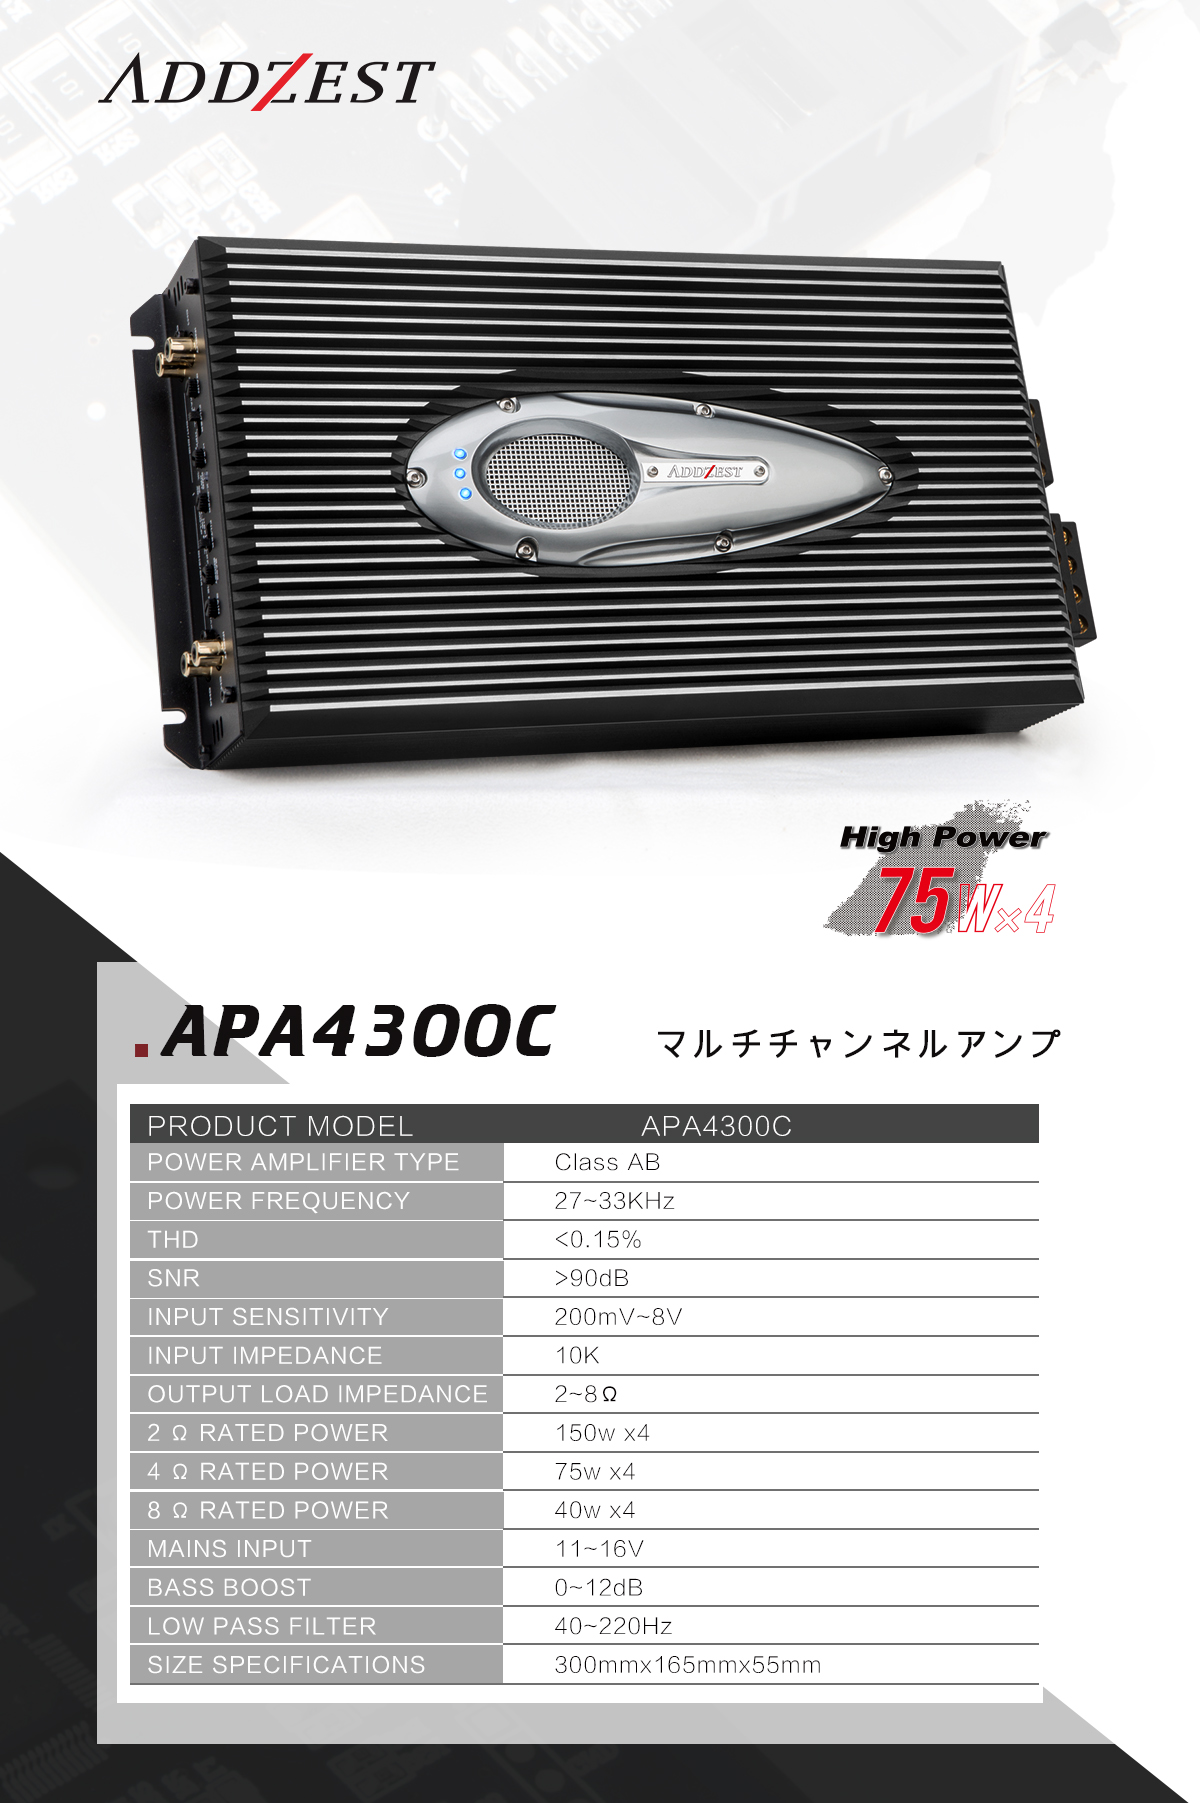  APA4300C